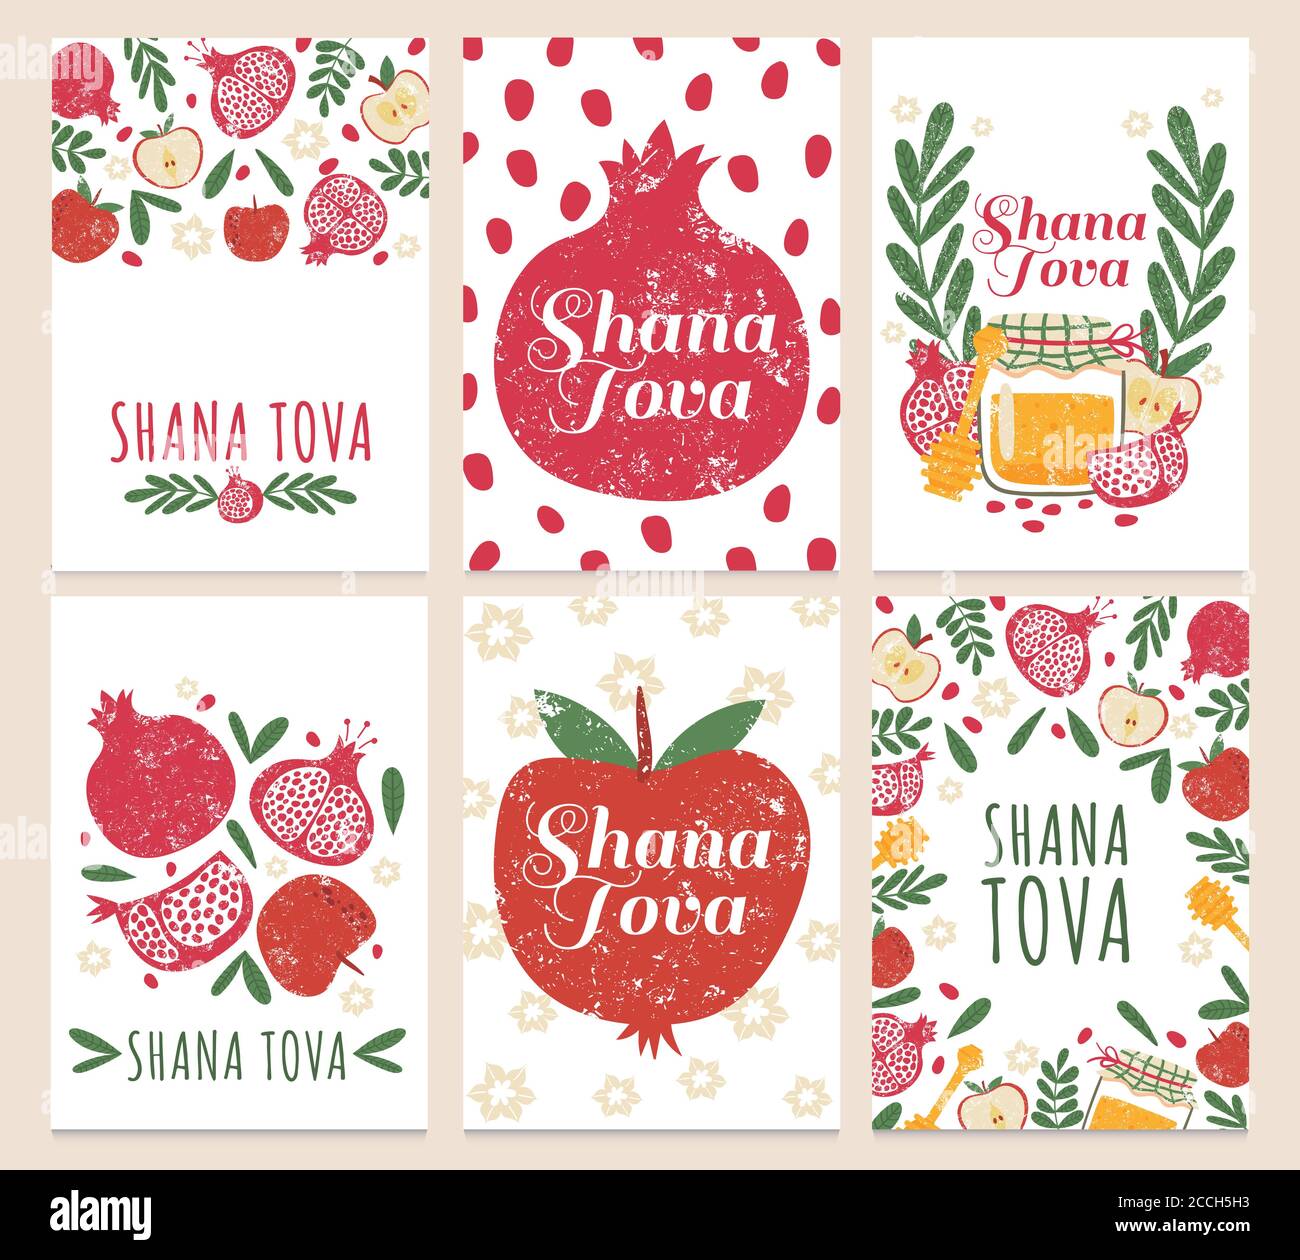 Shana tova. Happy jewish new year, greeting cards with rosh hashanah holiday symbols. Pomegranate, apple and honey vector set Stock Vector